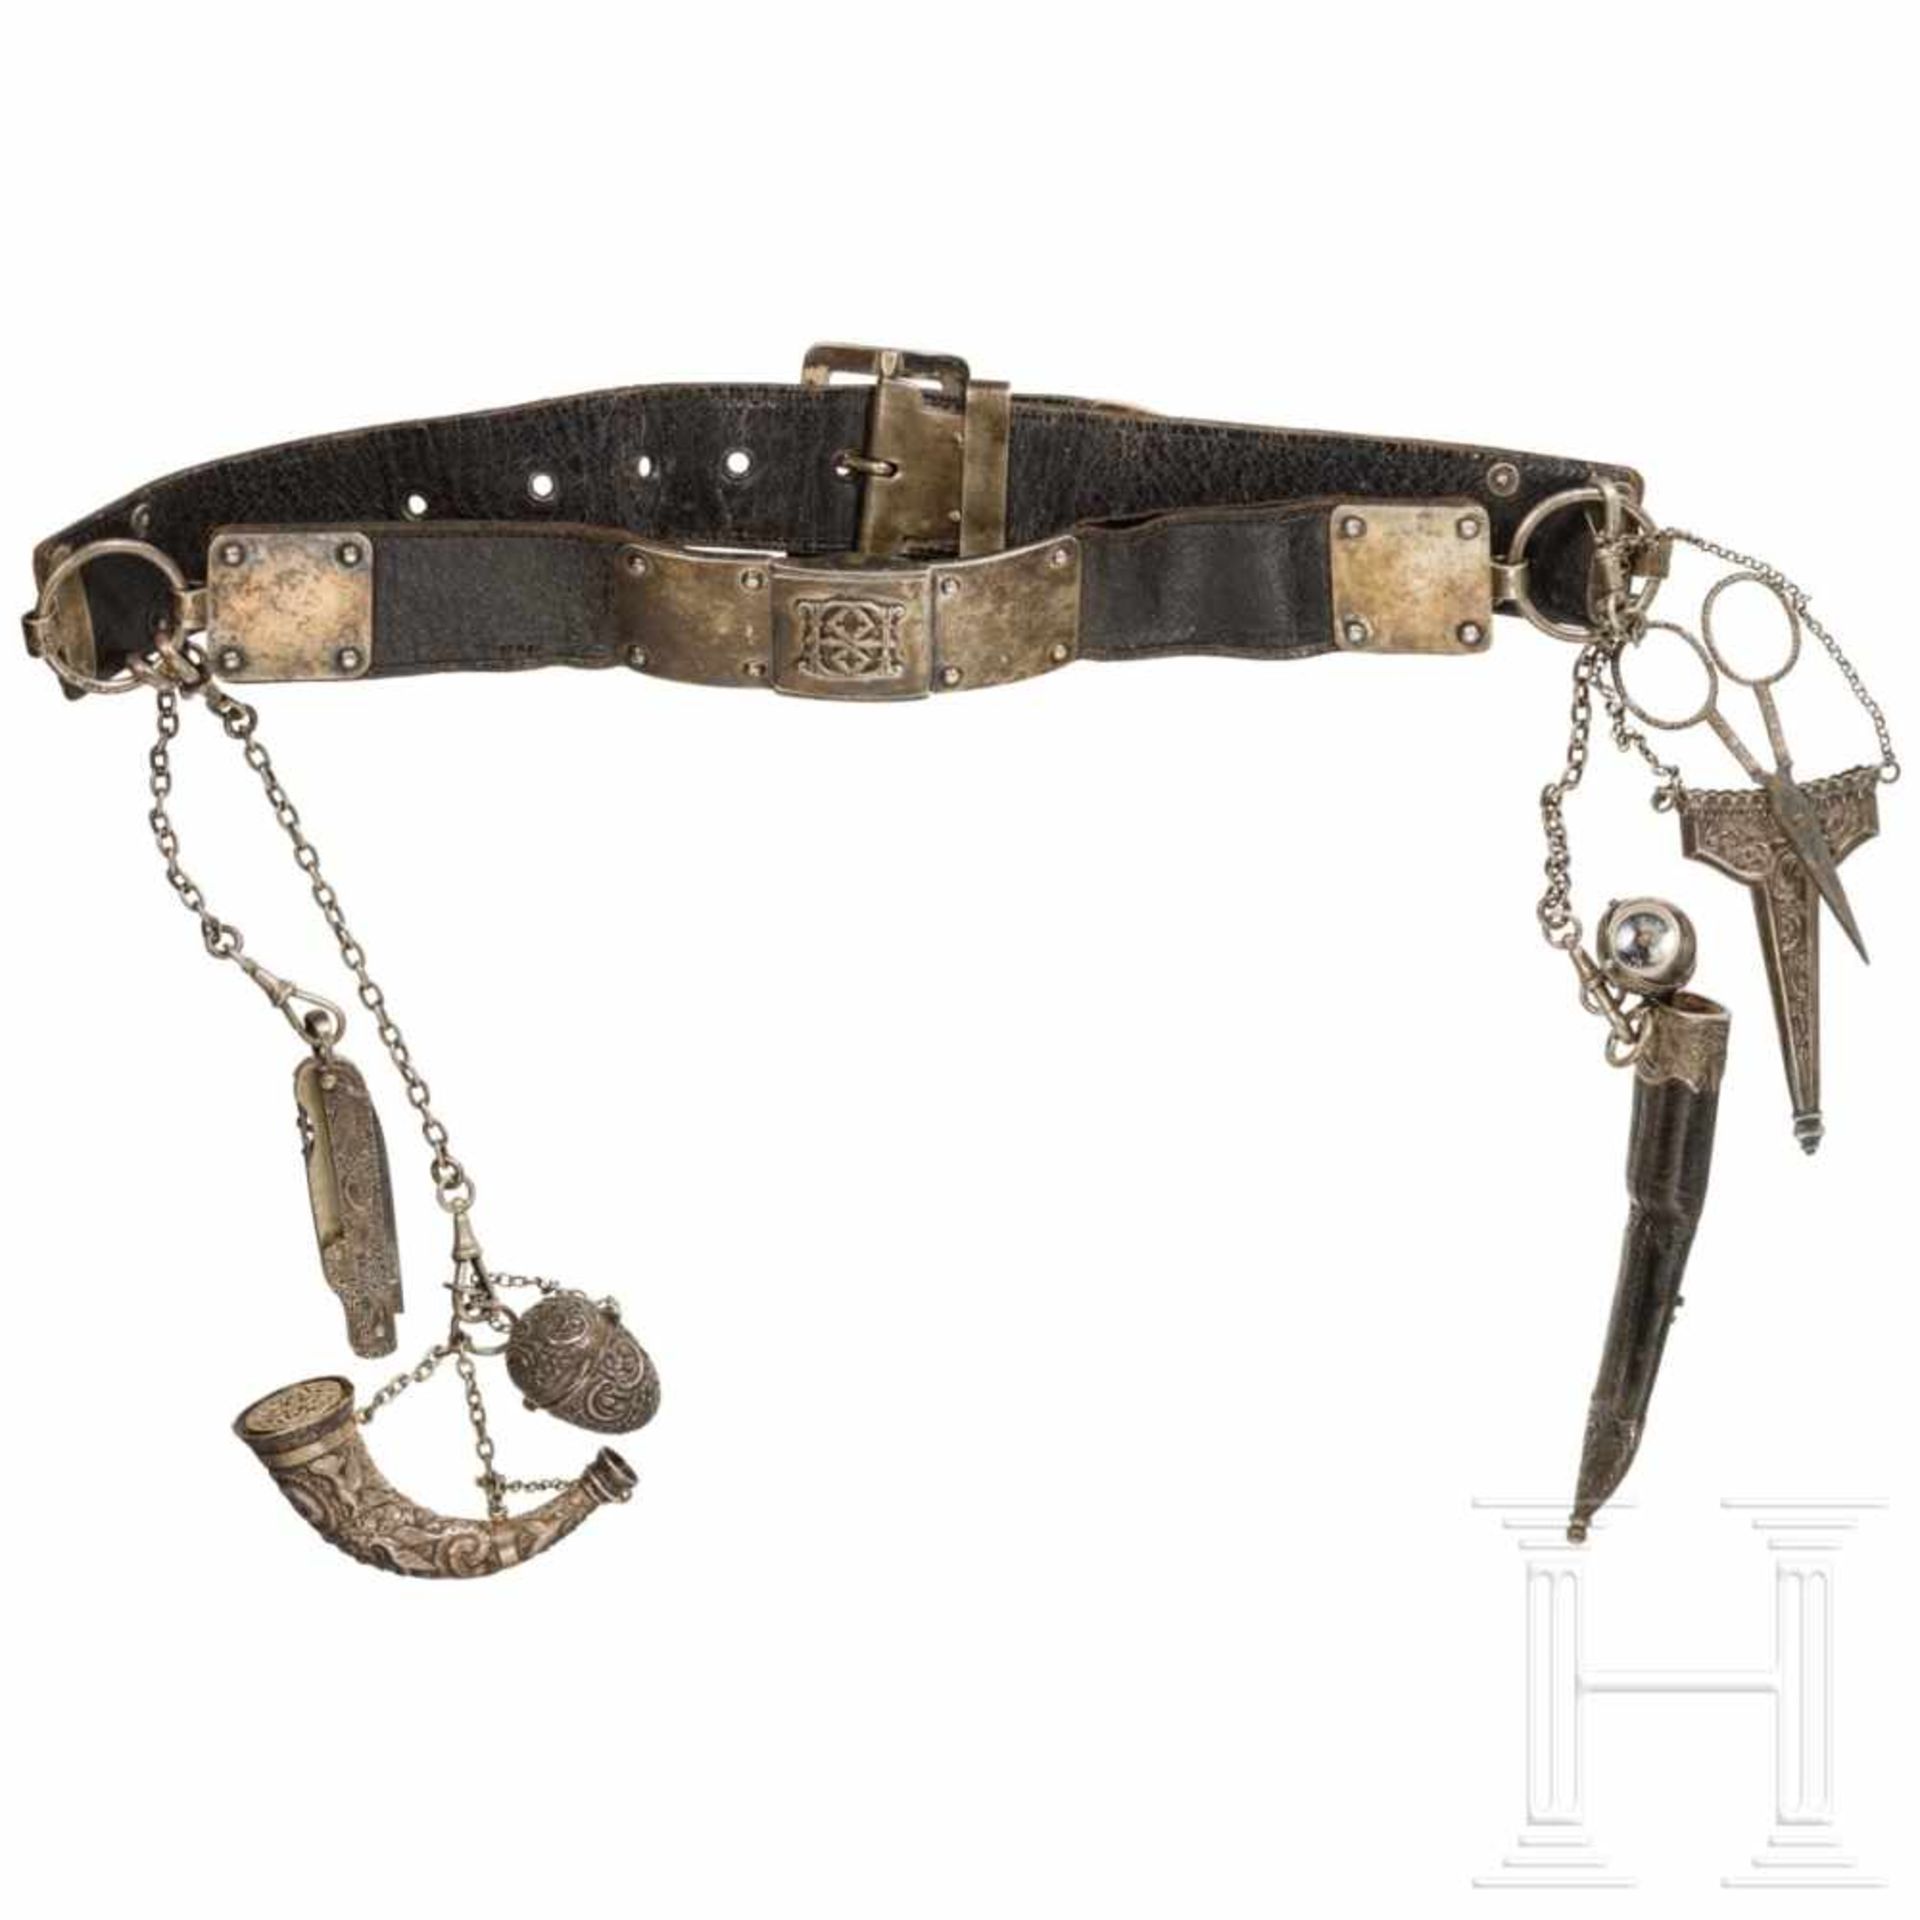 An English lady's hunting belt, early 19th centuryVierteiliger Gürtel aus Leder, die Beschläge und